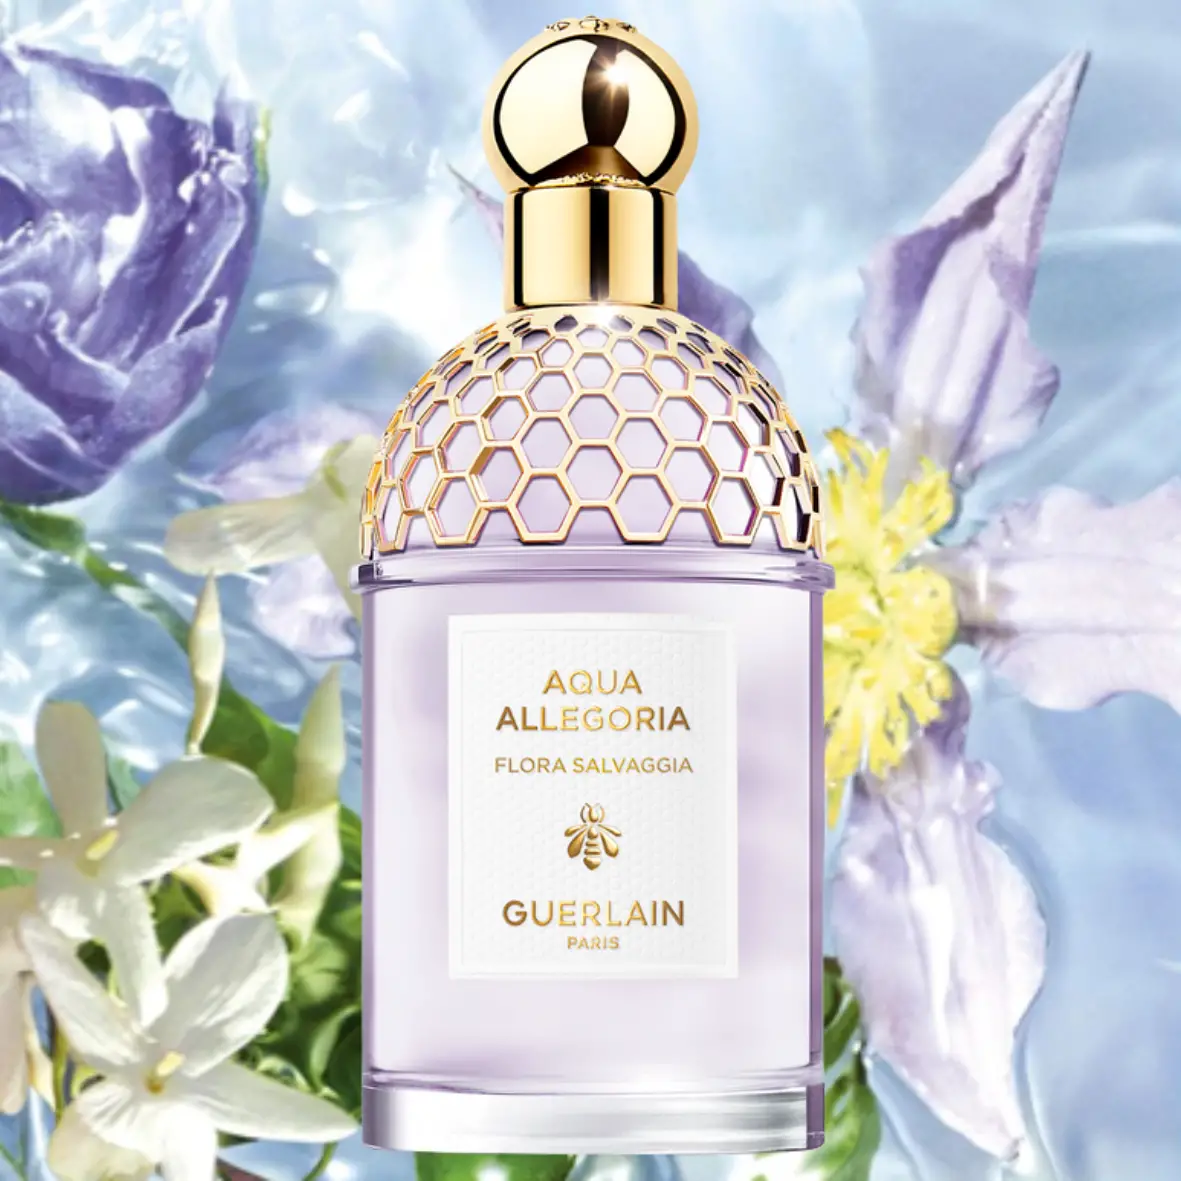 Guerlain Aqua Allegoria Flora Salvaggia
Best Violet Perfumes